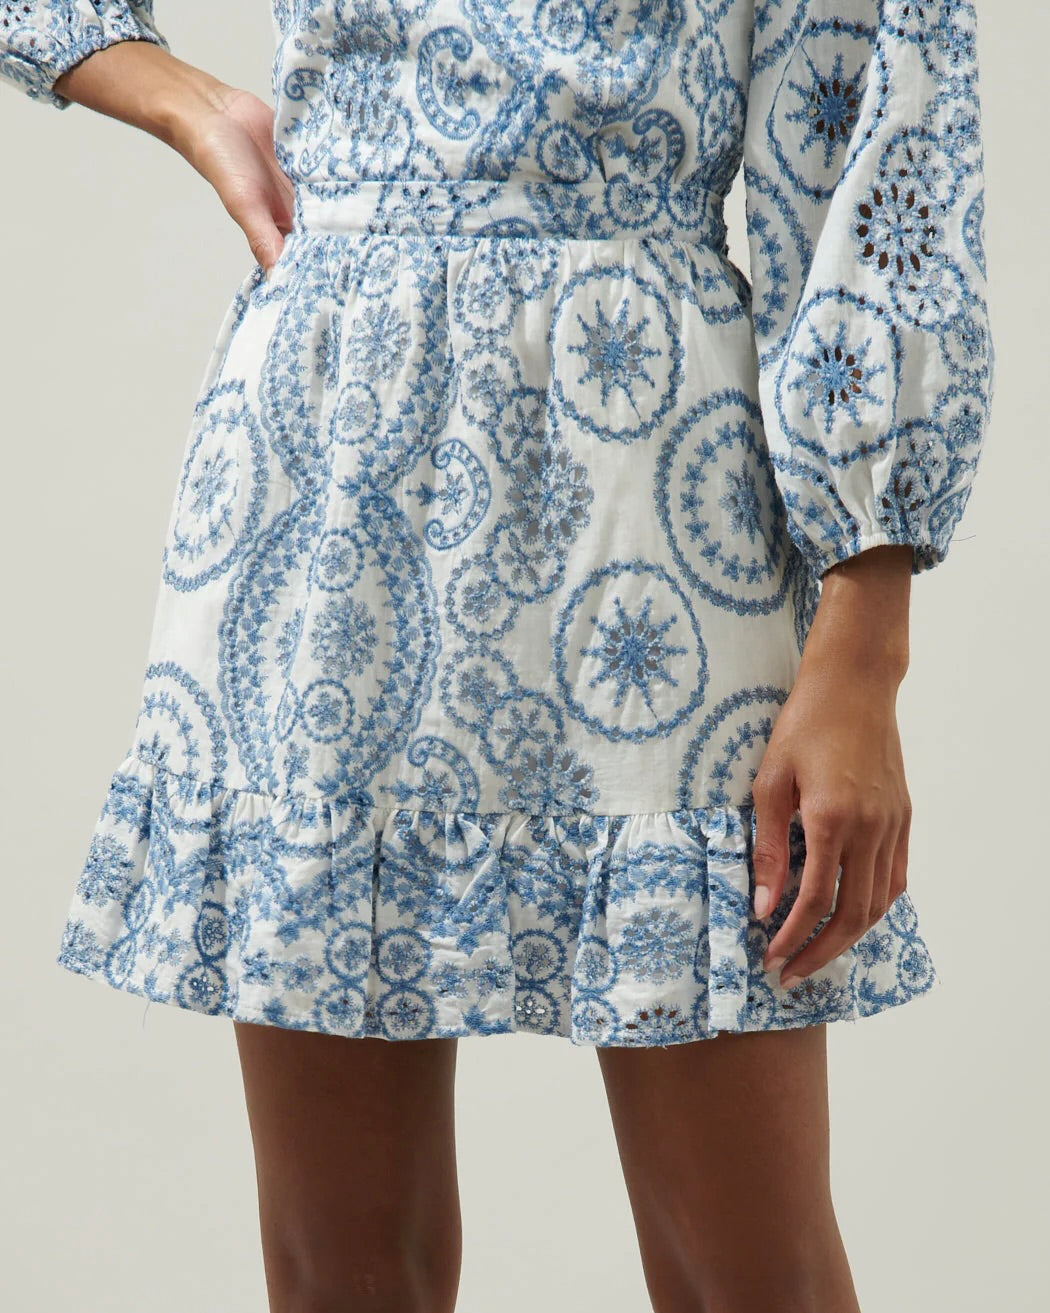 Model wearing Adelaide Border Print Eyelet mini skirt-white/blue on a white background